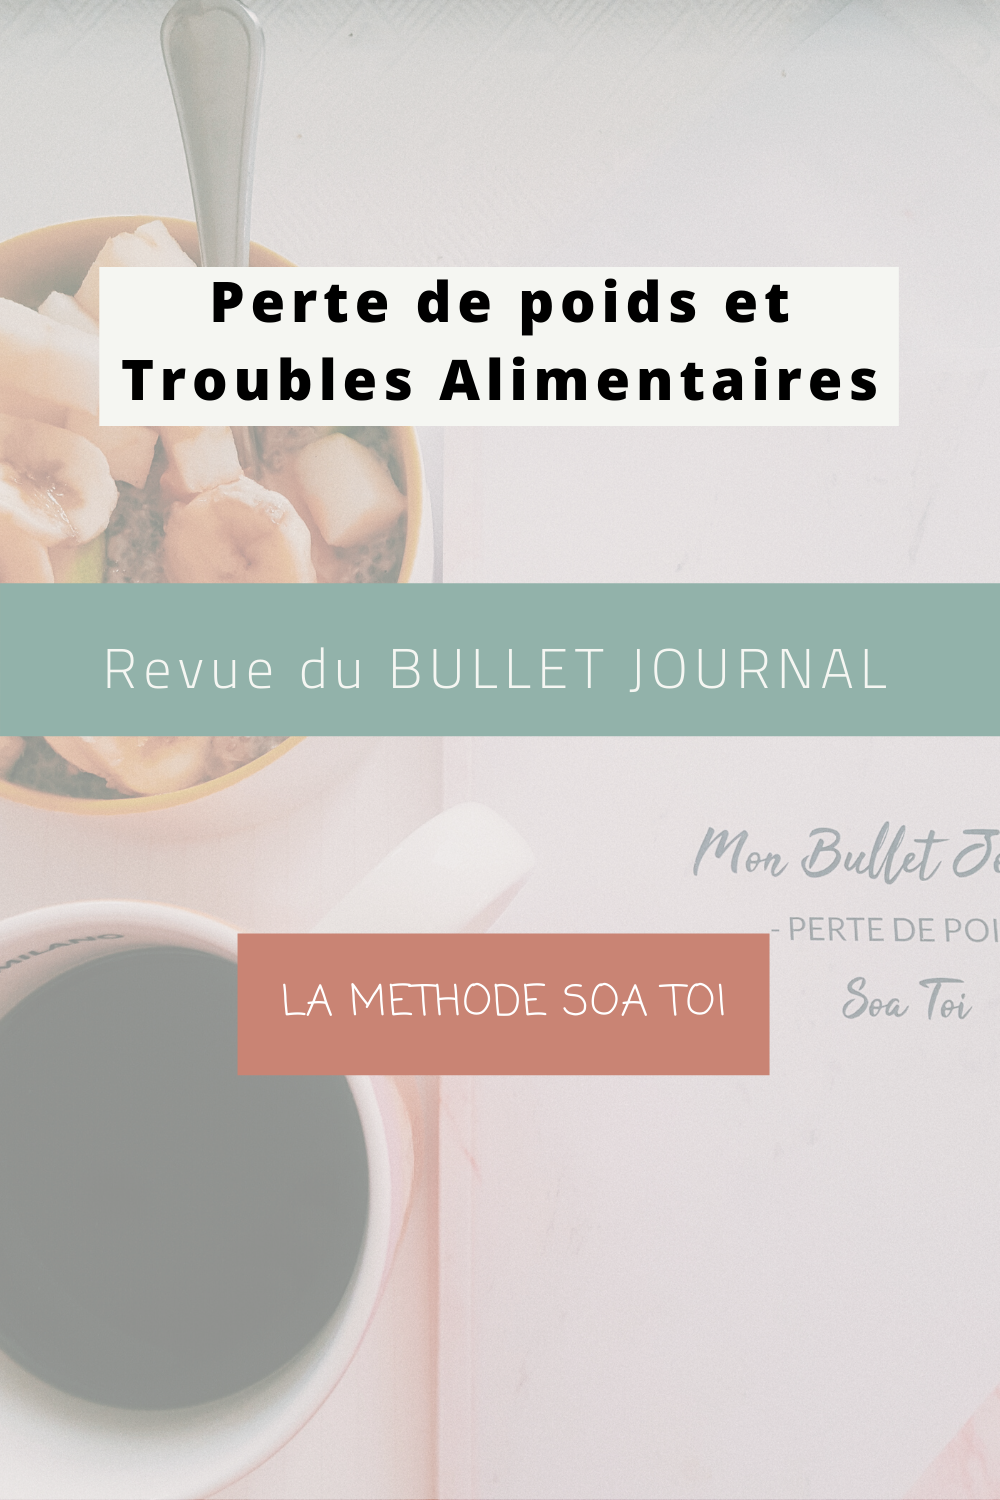 Perte de poids et troubles Alimentaires: Ma revue du Bullet Journal de la méthode Soa toi